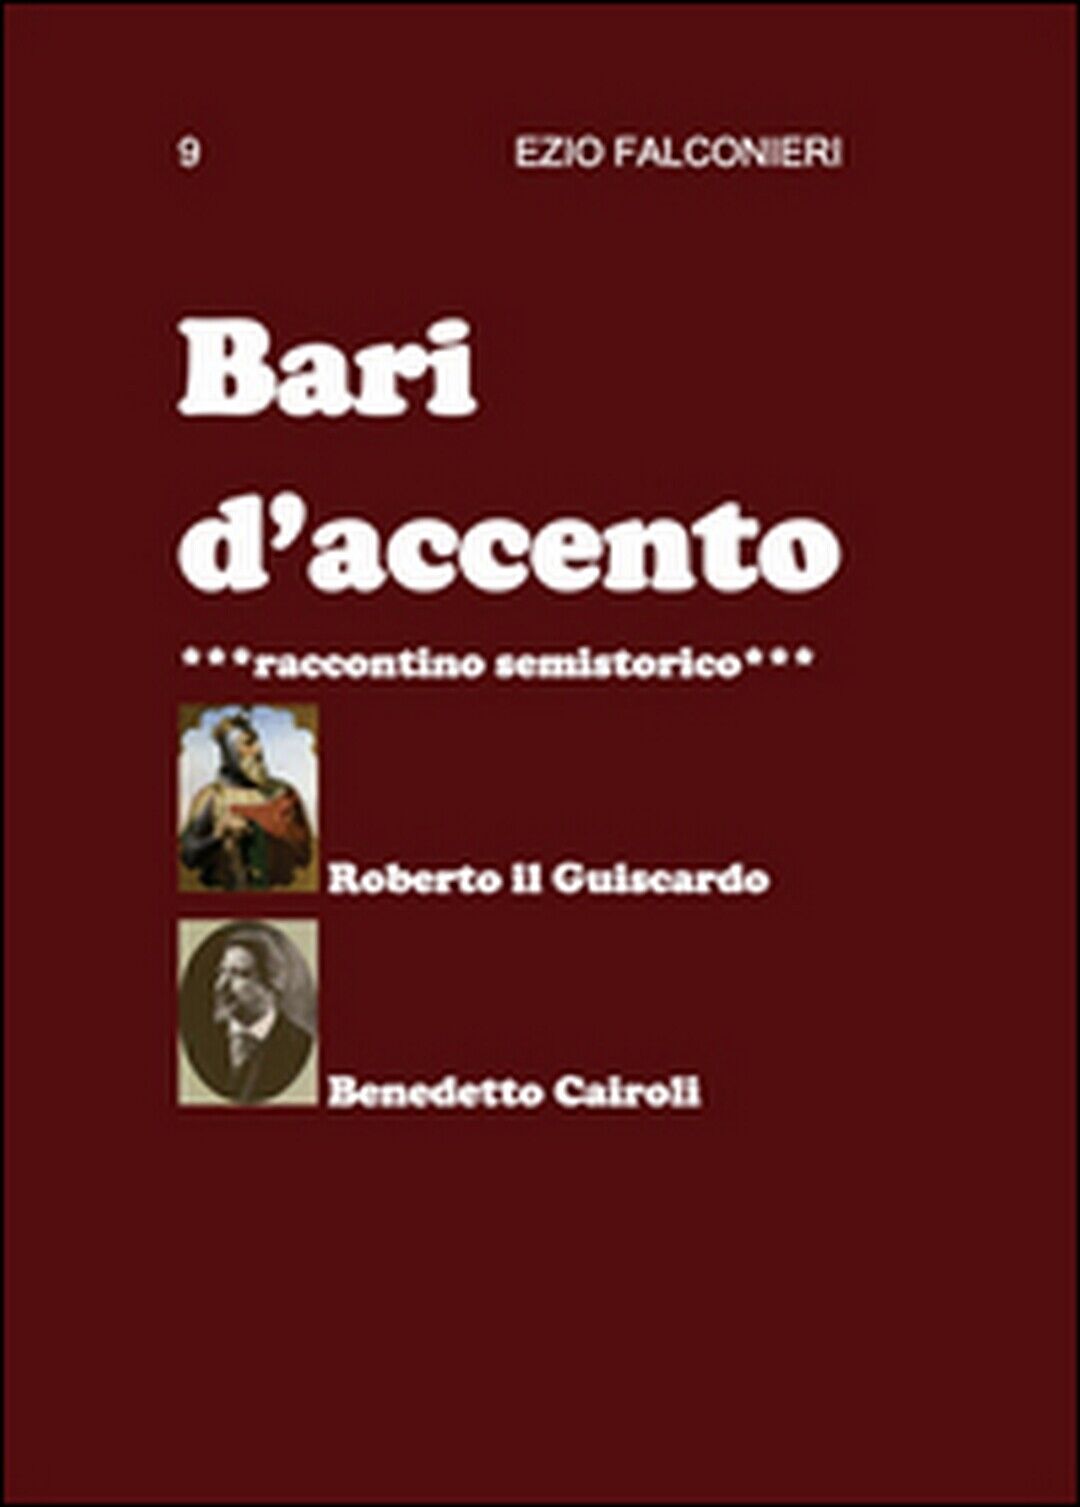 Bari d'accento Vol.9  di Ezio Falconieri,  2015,  Youcanprint